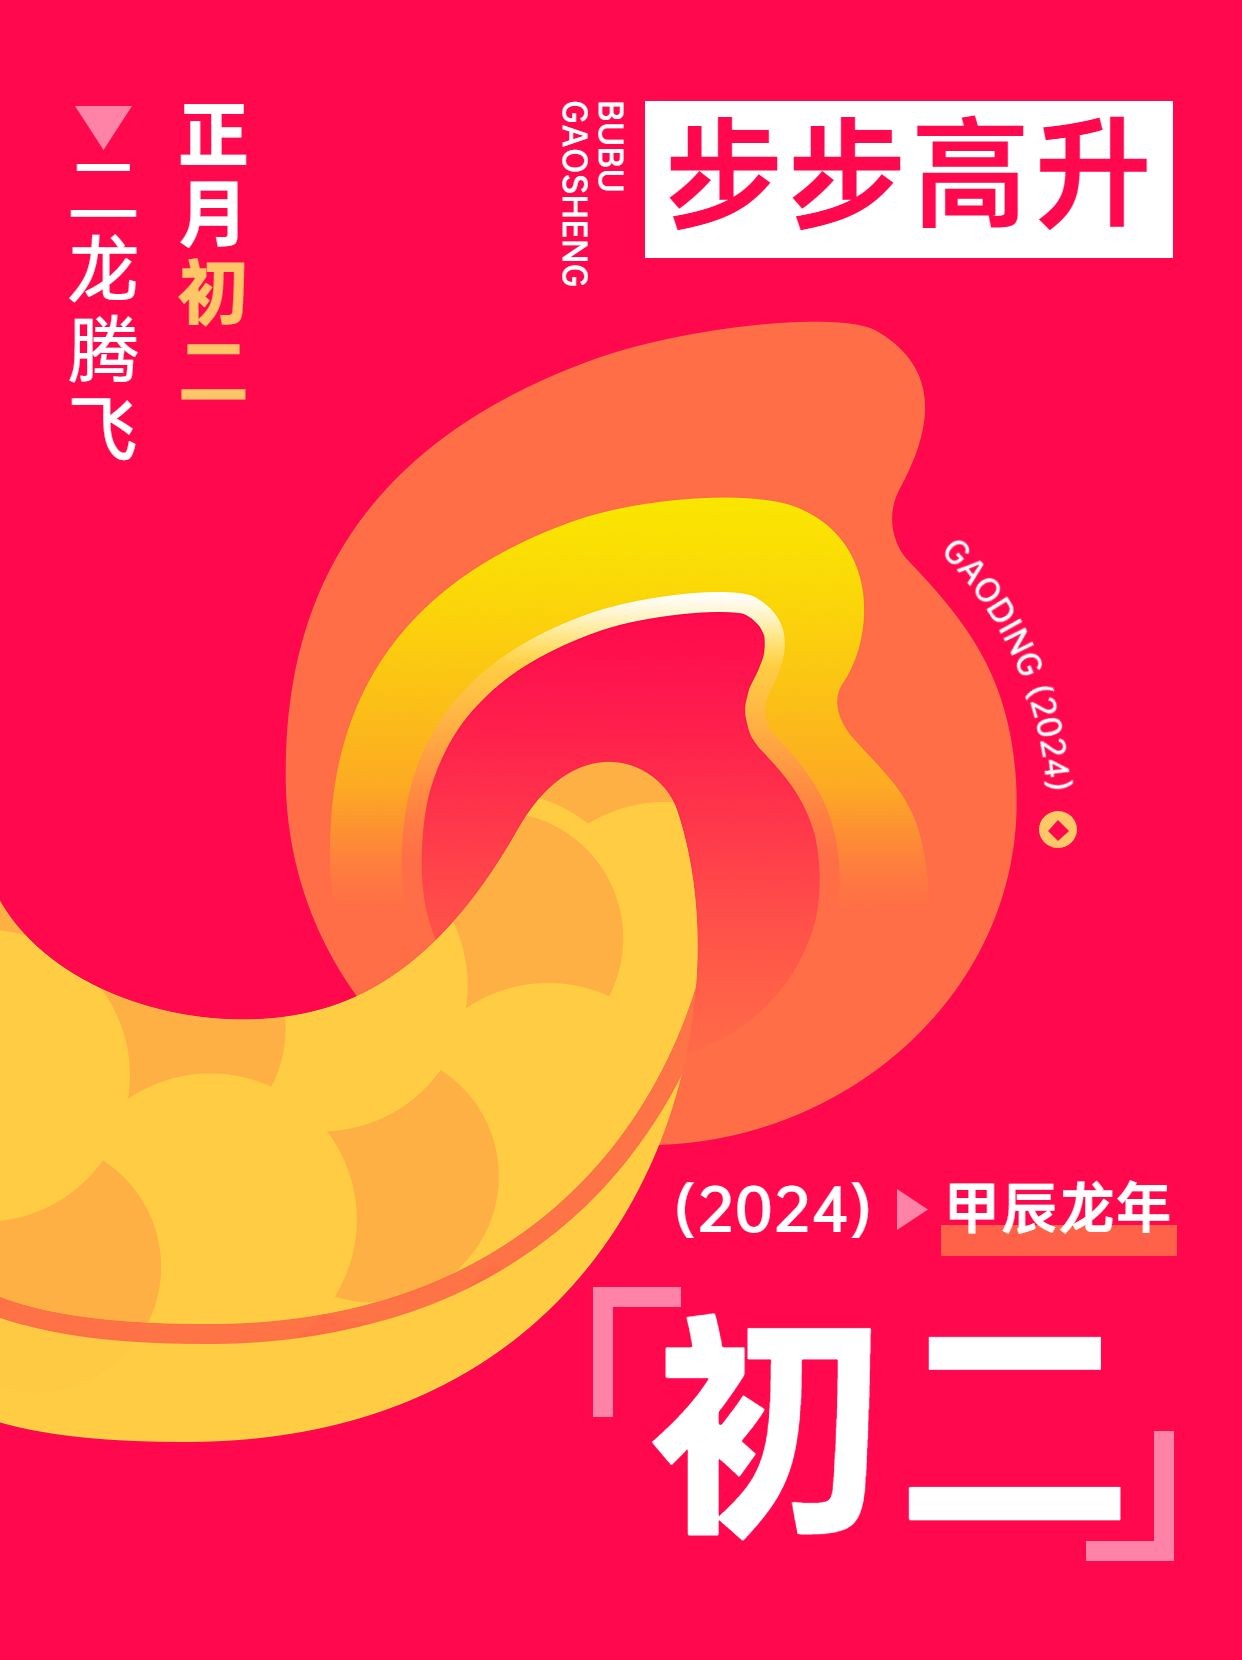 春节新年拜年祝福正月初二套系小红书配图